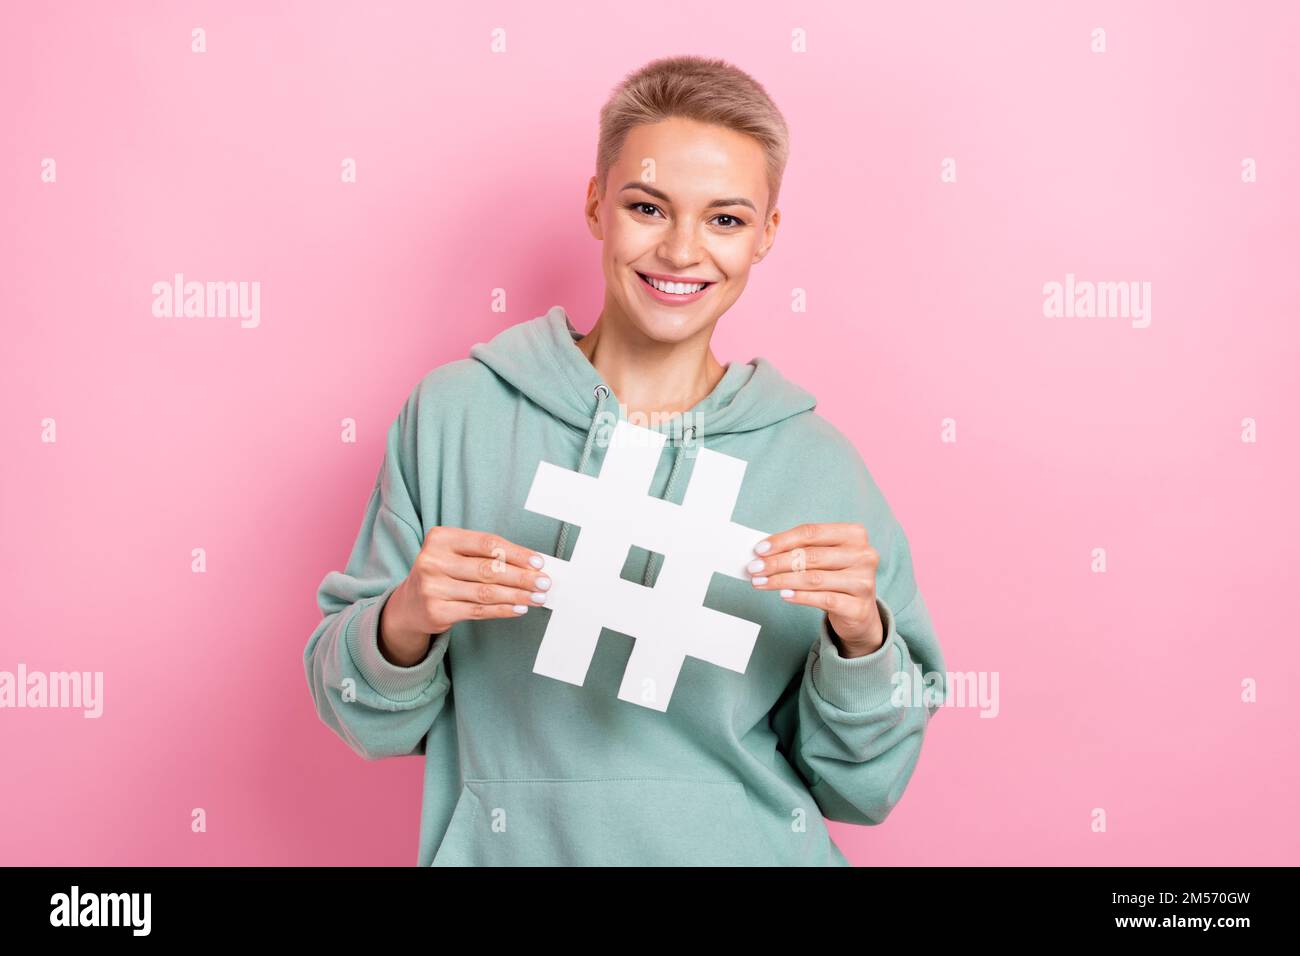 Foto eines hübschen jungen Mädchens mit Hashtag Symbol Influencer Marketer gekleidet stilvoll Khaki Look isoliert auf pinkfarbenem Hintergrund Stockfoto